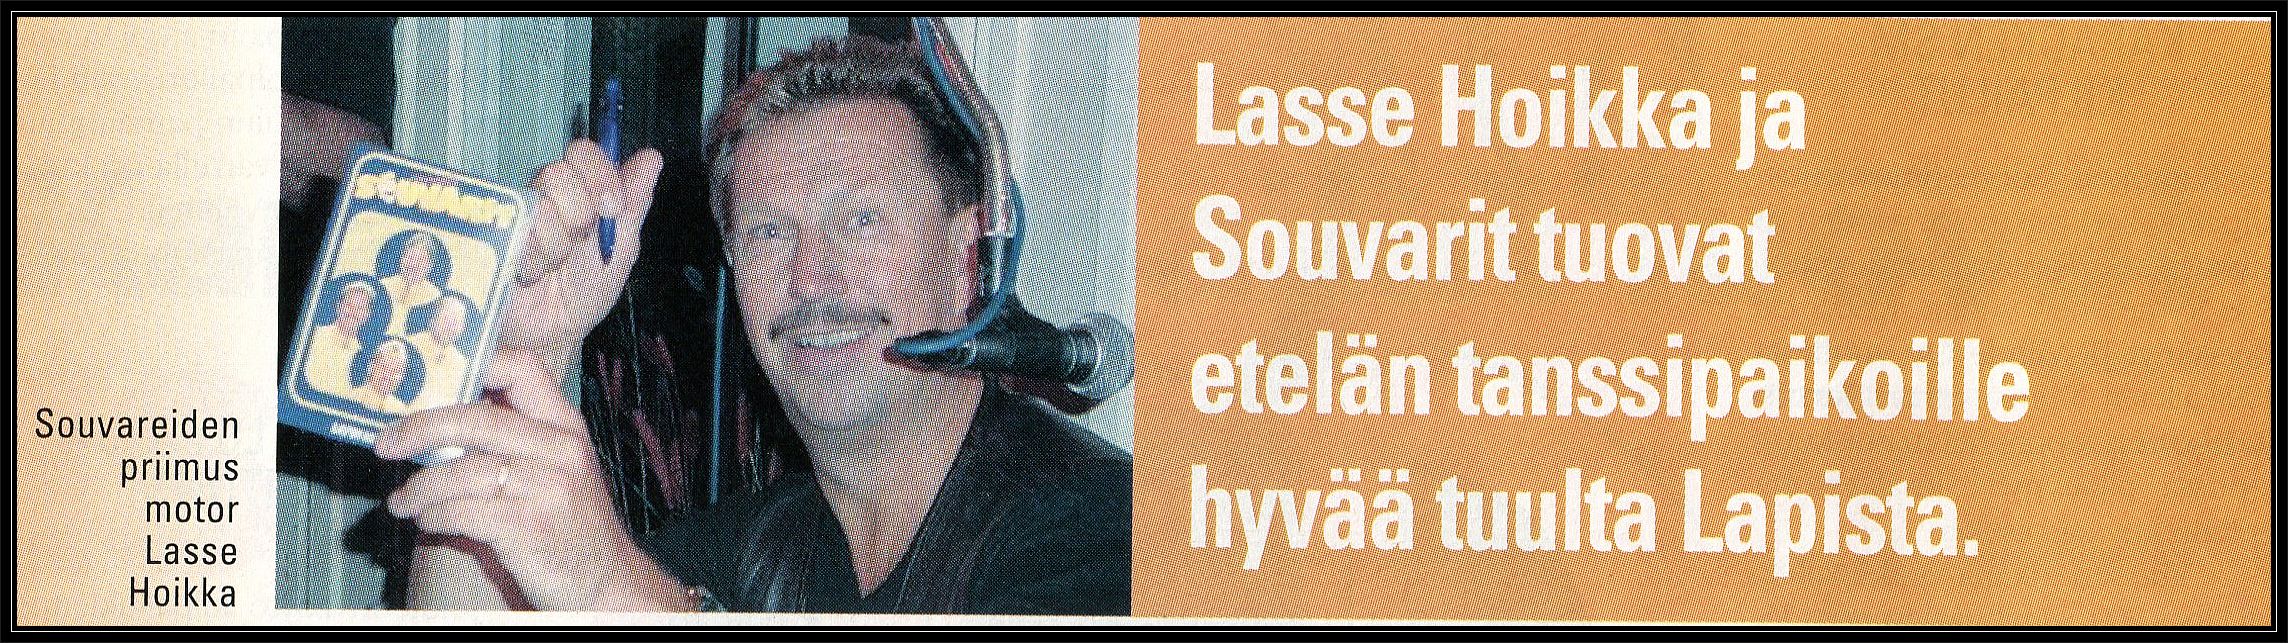 LasseHoikka2001